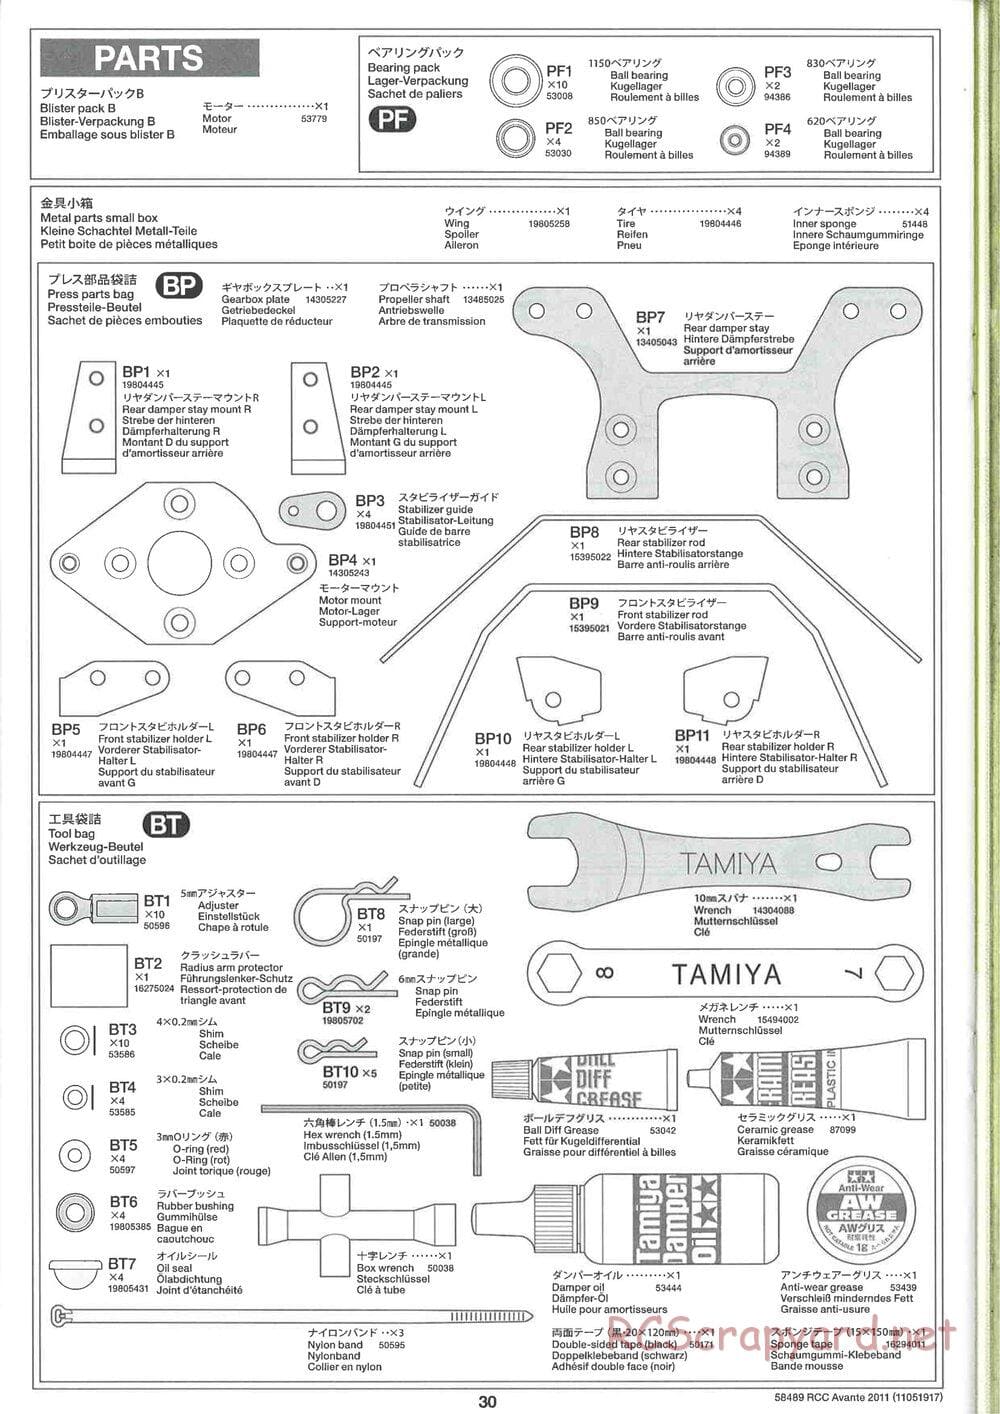 Tamiya - Avante 2011 - AV Chassis - Manual - Page 30